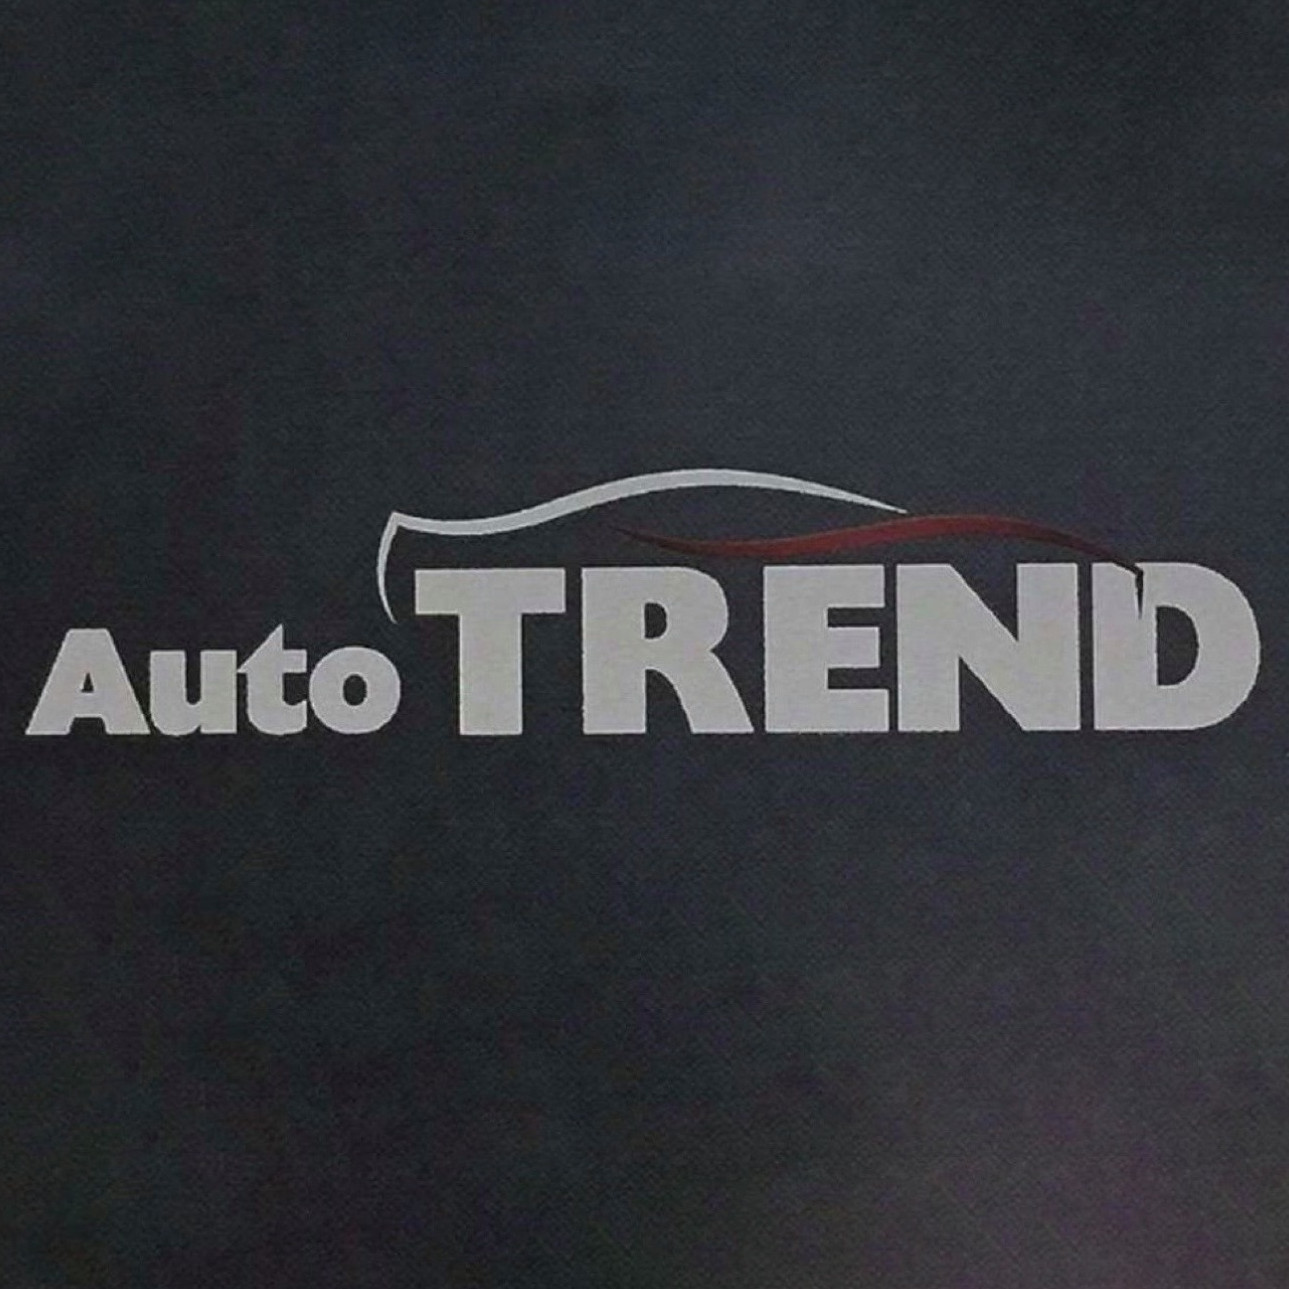 Auto Trend